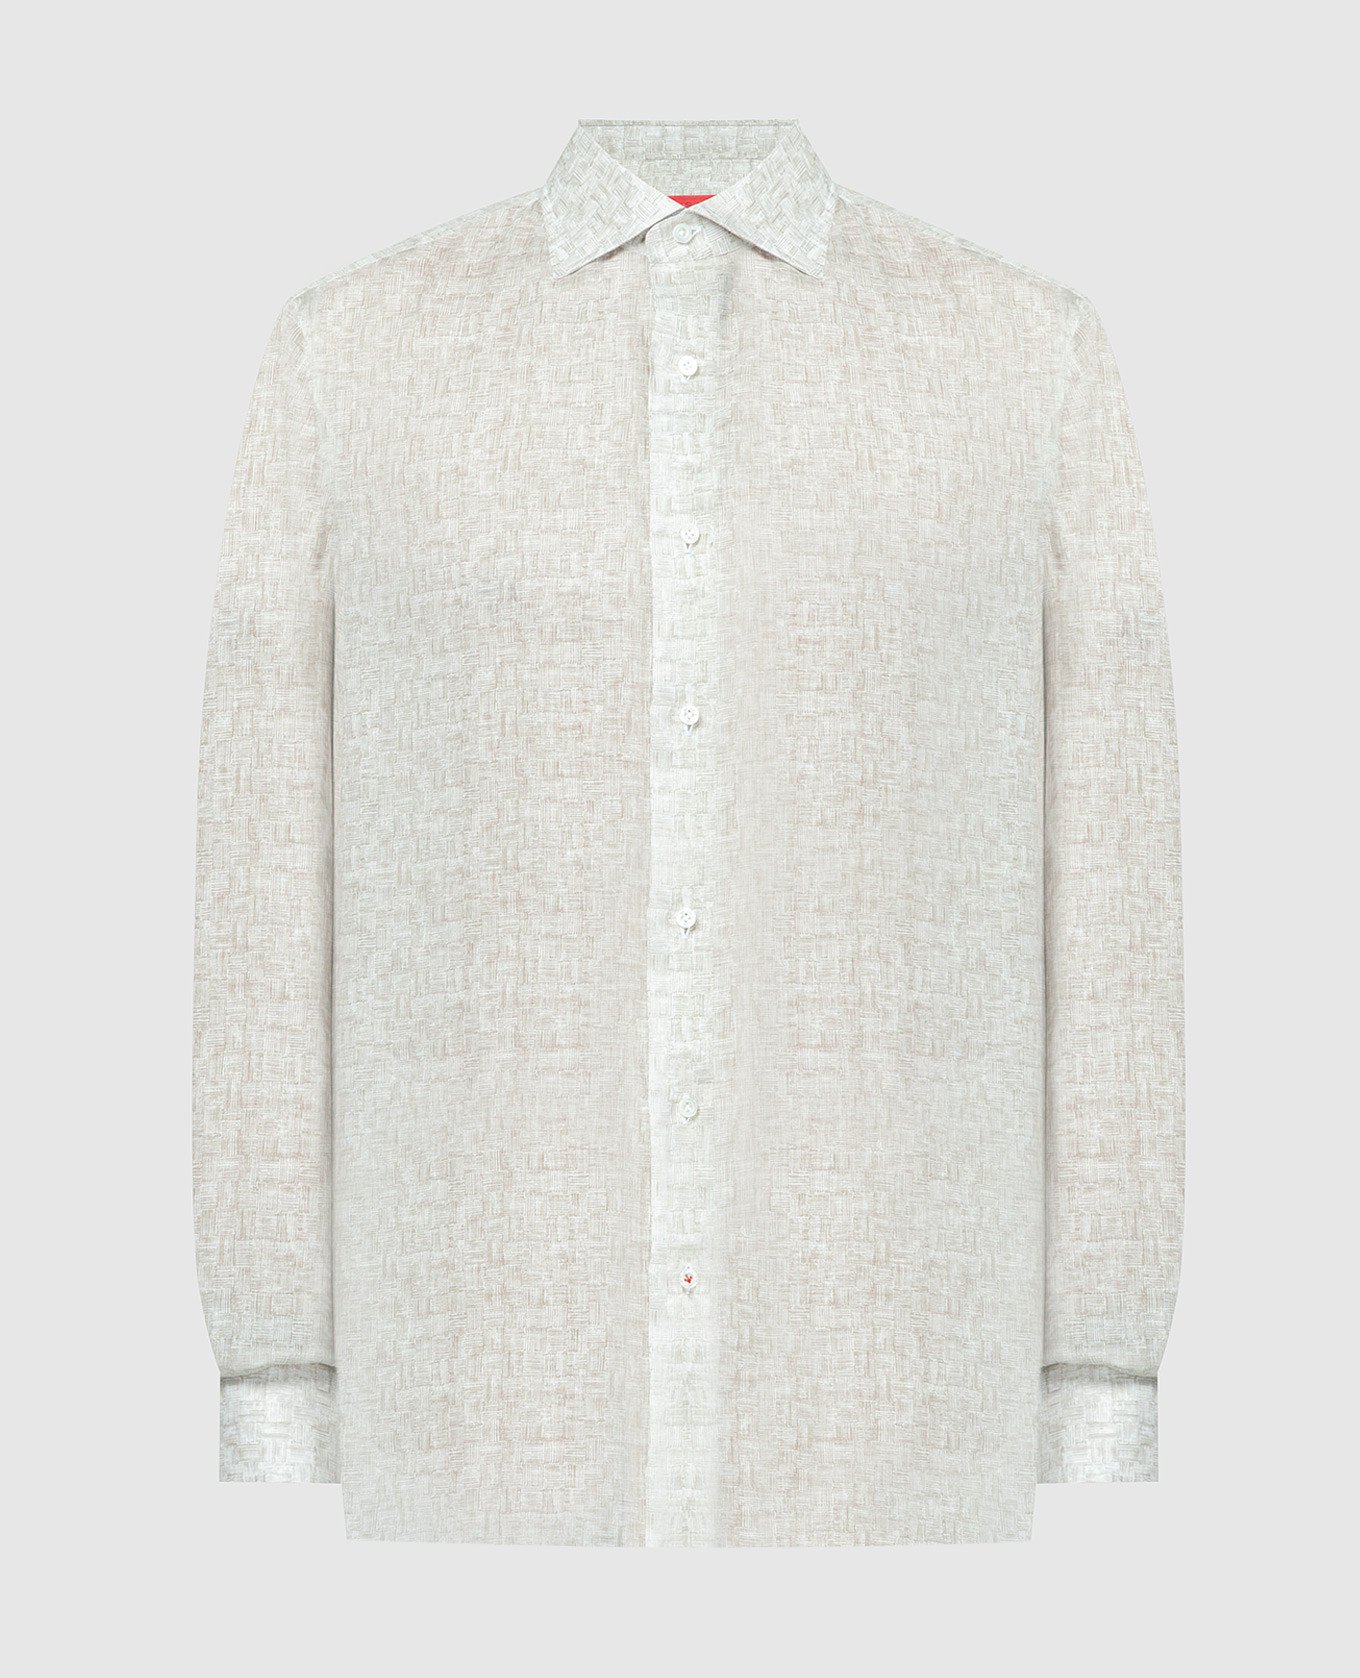 Beige linen shirt with a print